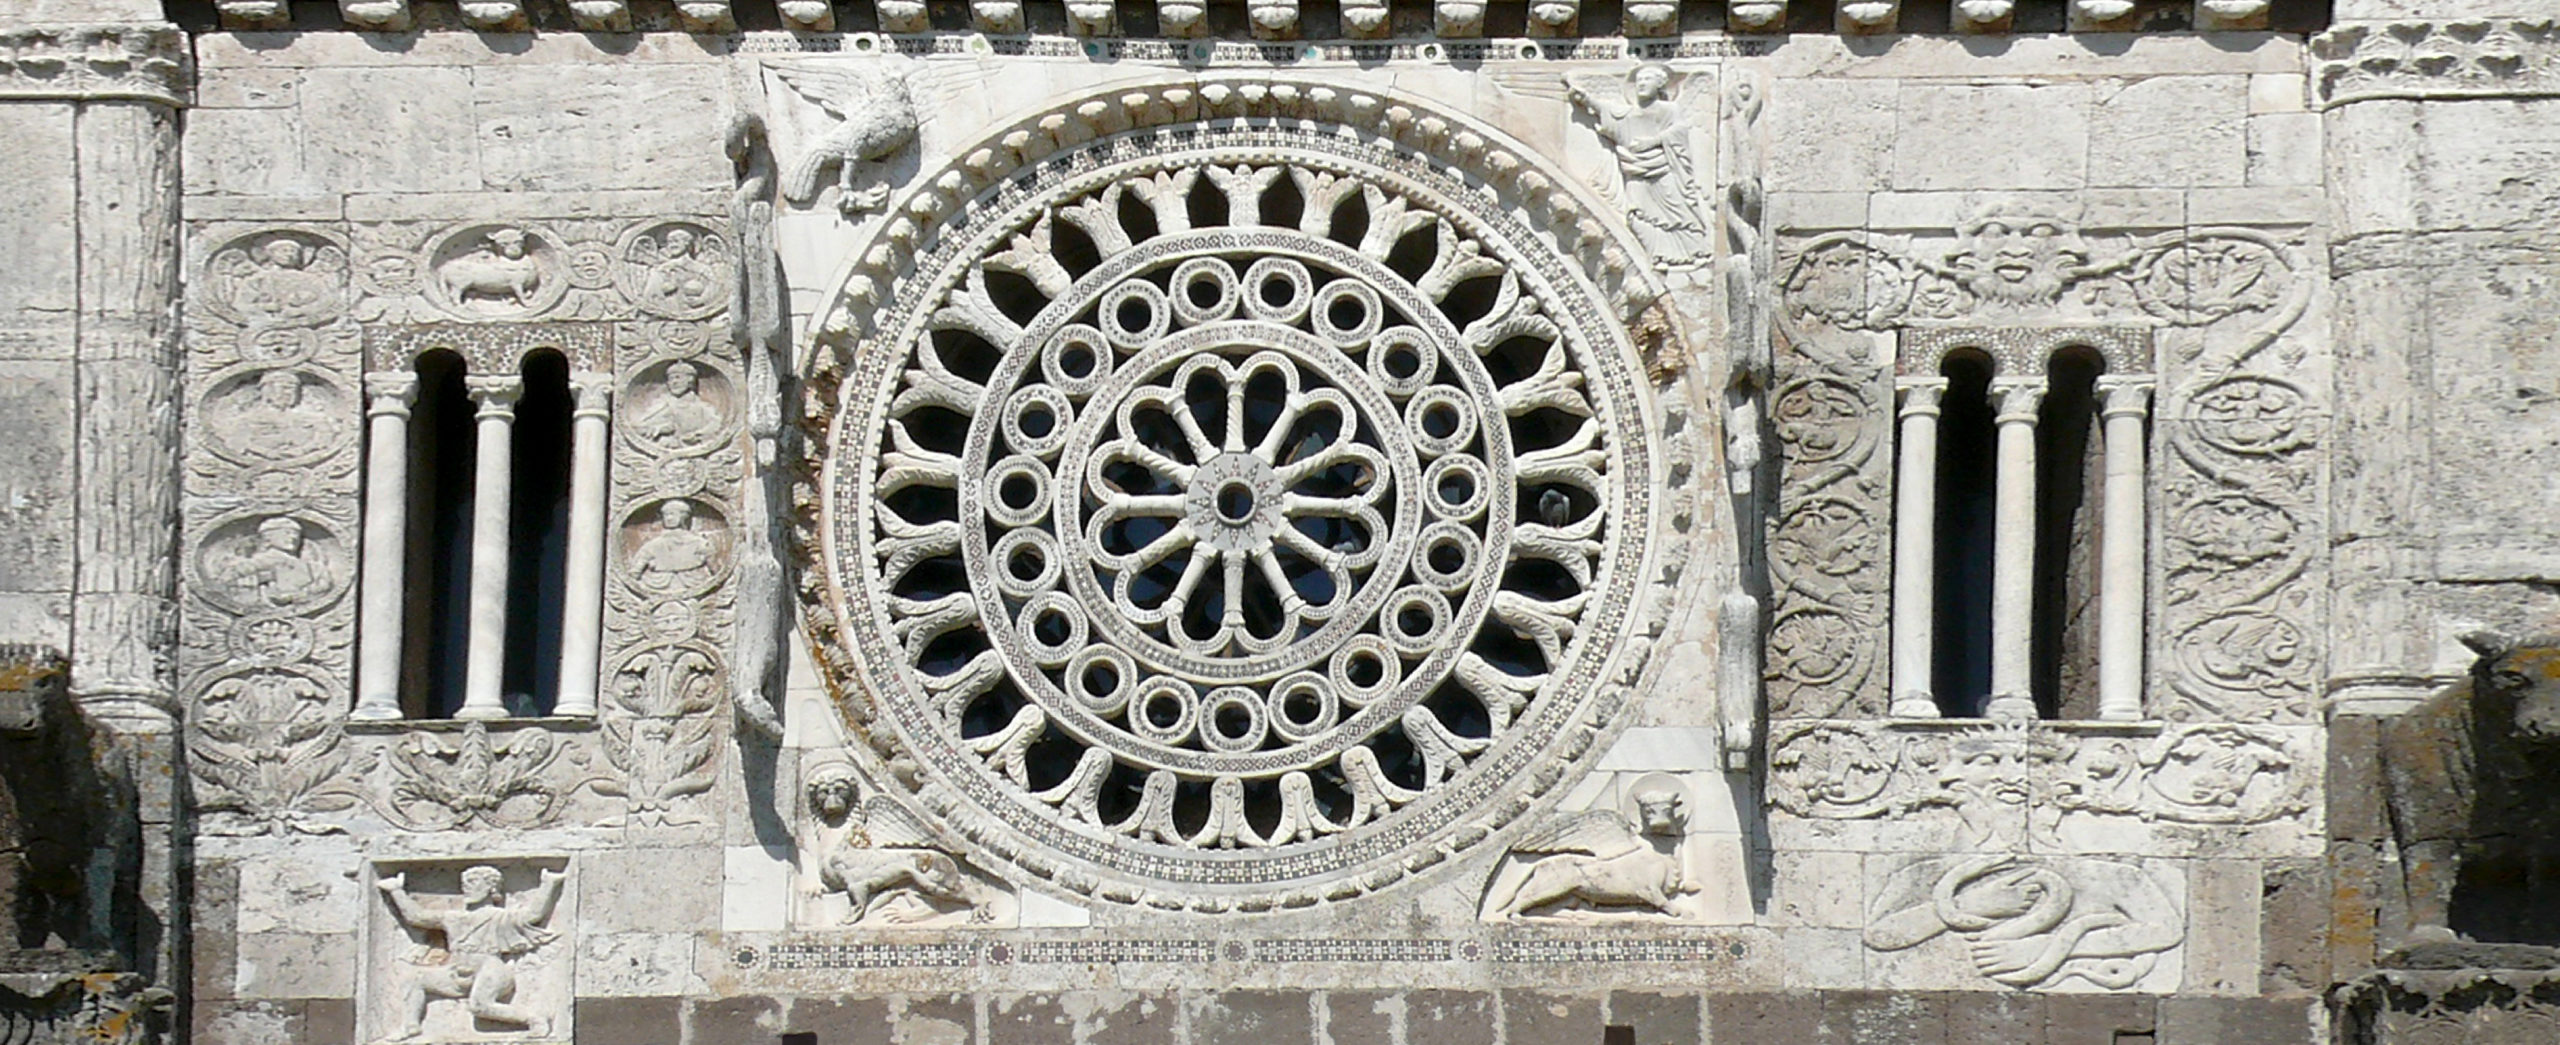 Tuscania - Rosone della facciata della basilica di San Pietro